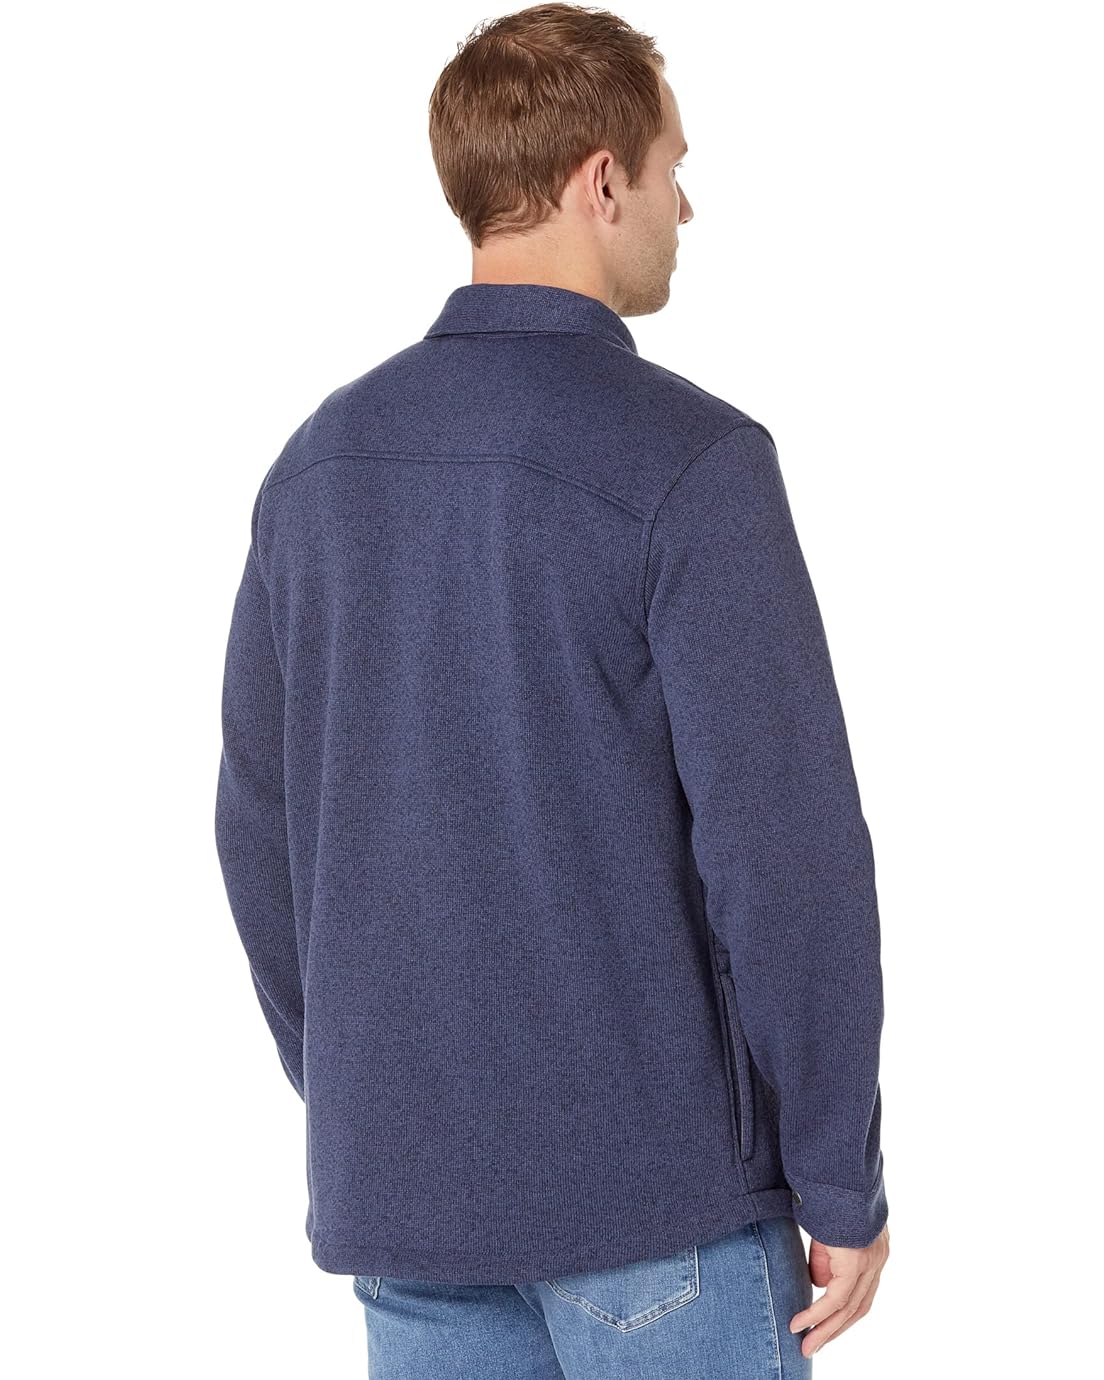  L.L.Bean Sweater Fleece Shirt Jacket - Tall